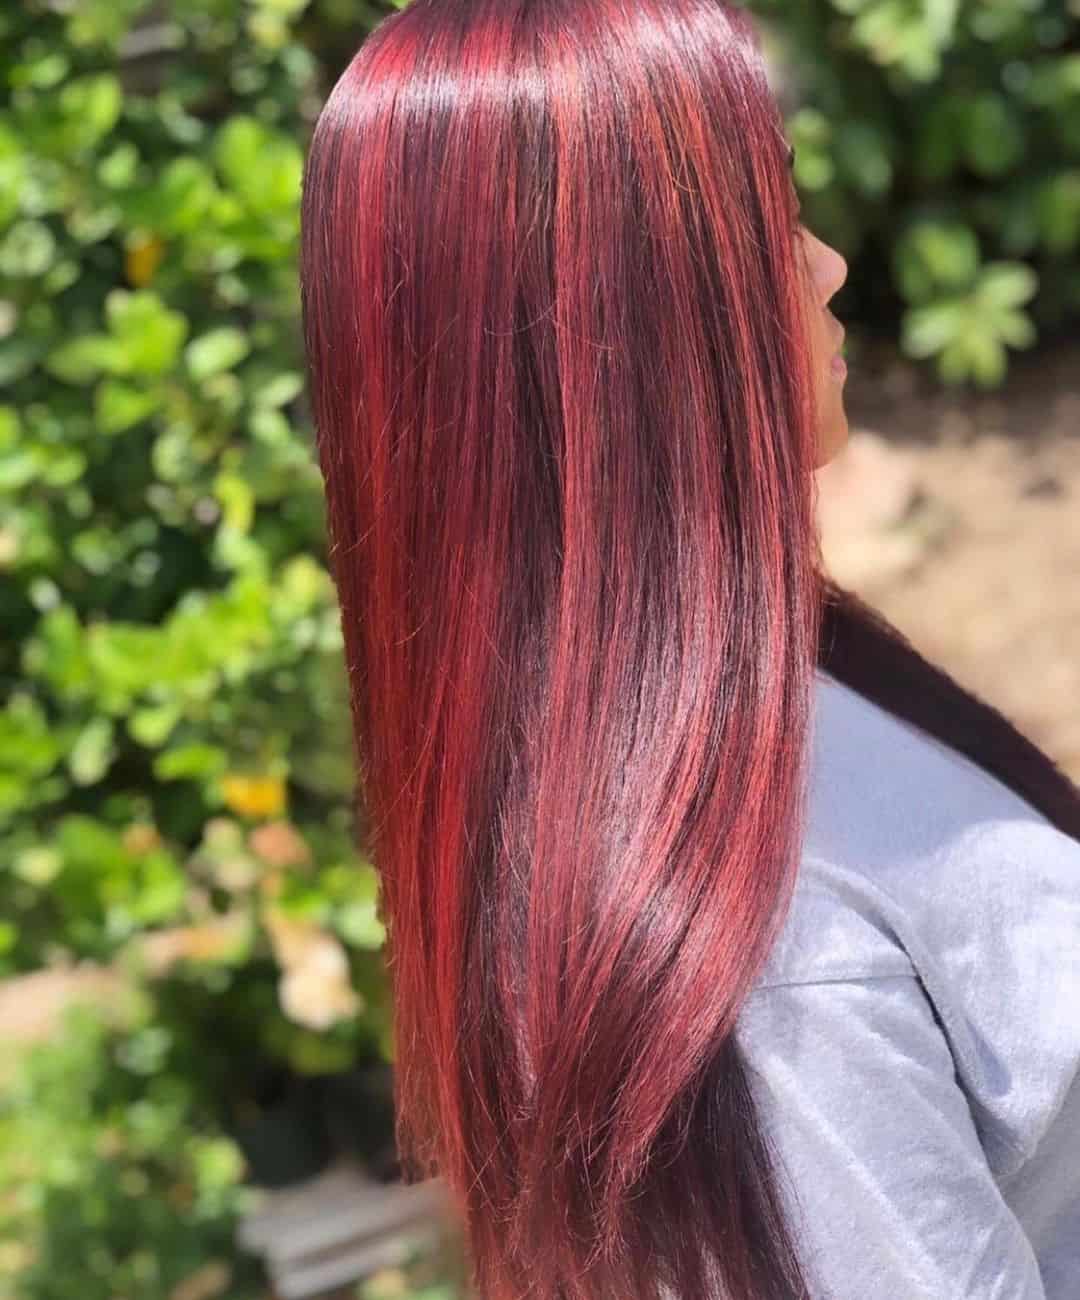 Red Highlights On Black Hair Long Sleek Look 